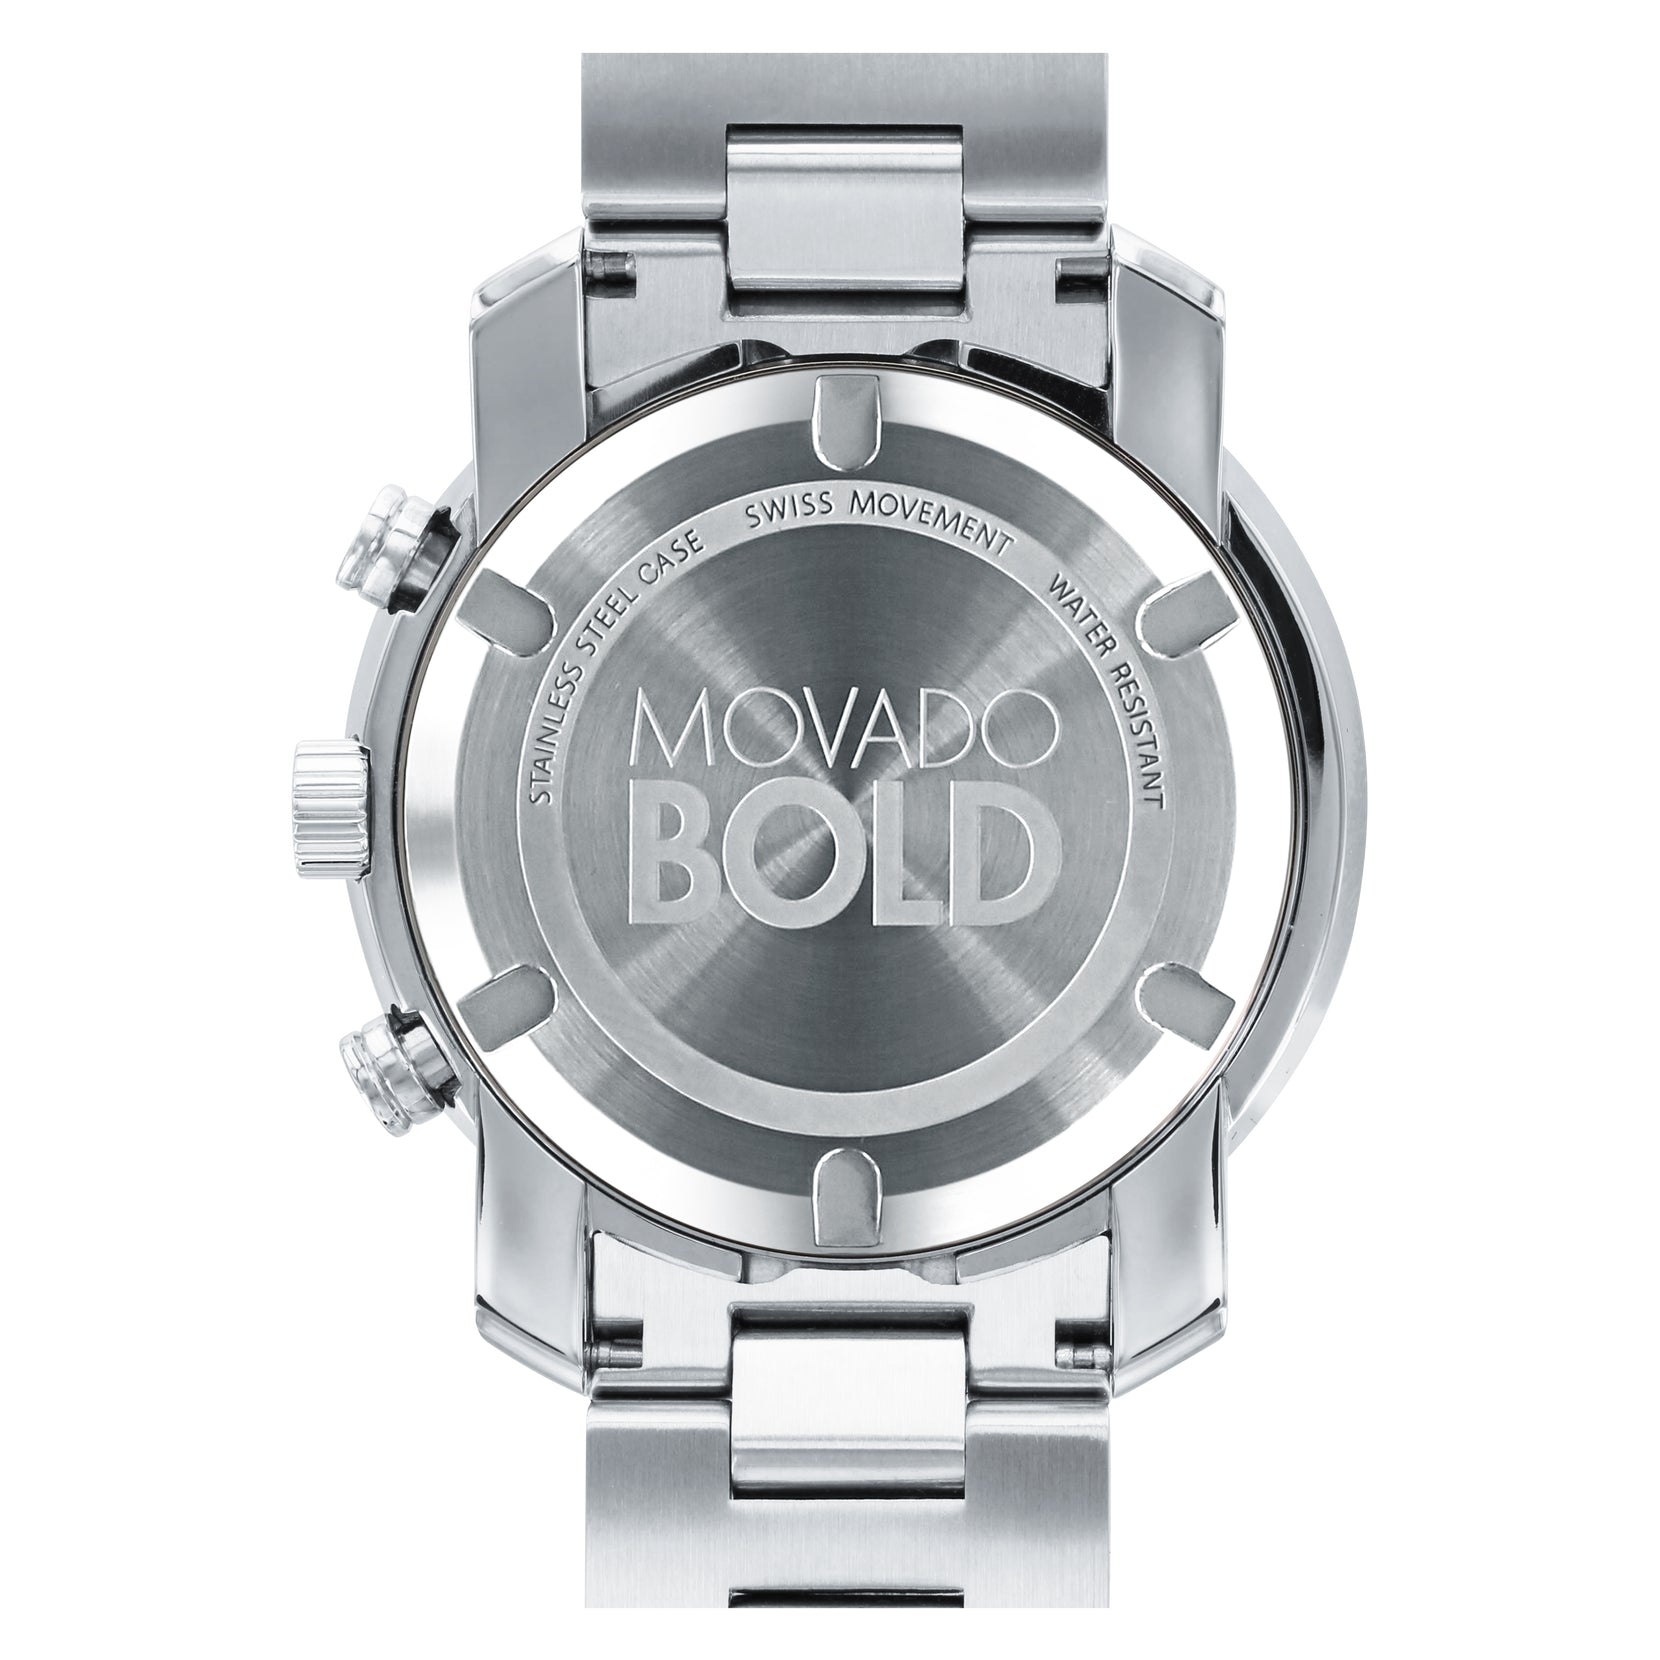 Movado Movado Bold Chronograph Silver Dial Men's Watch 3600432